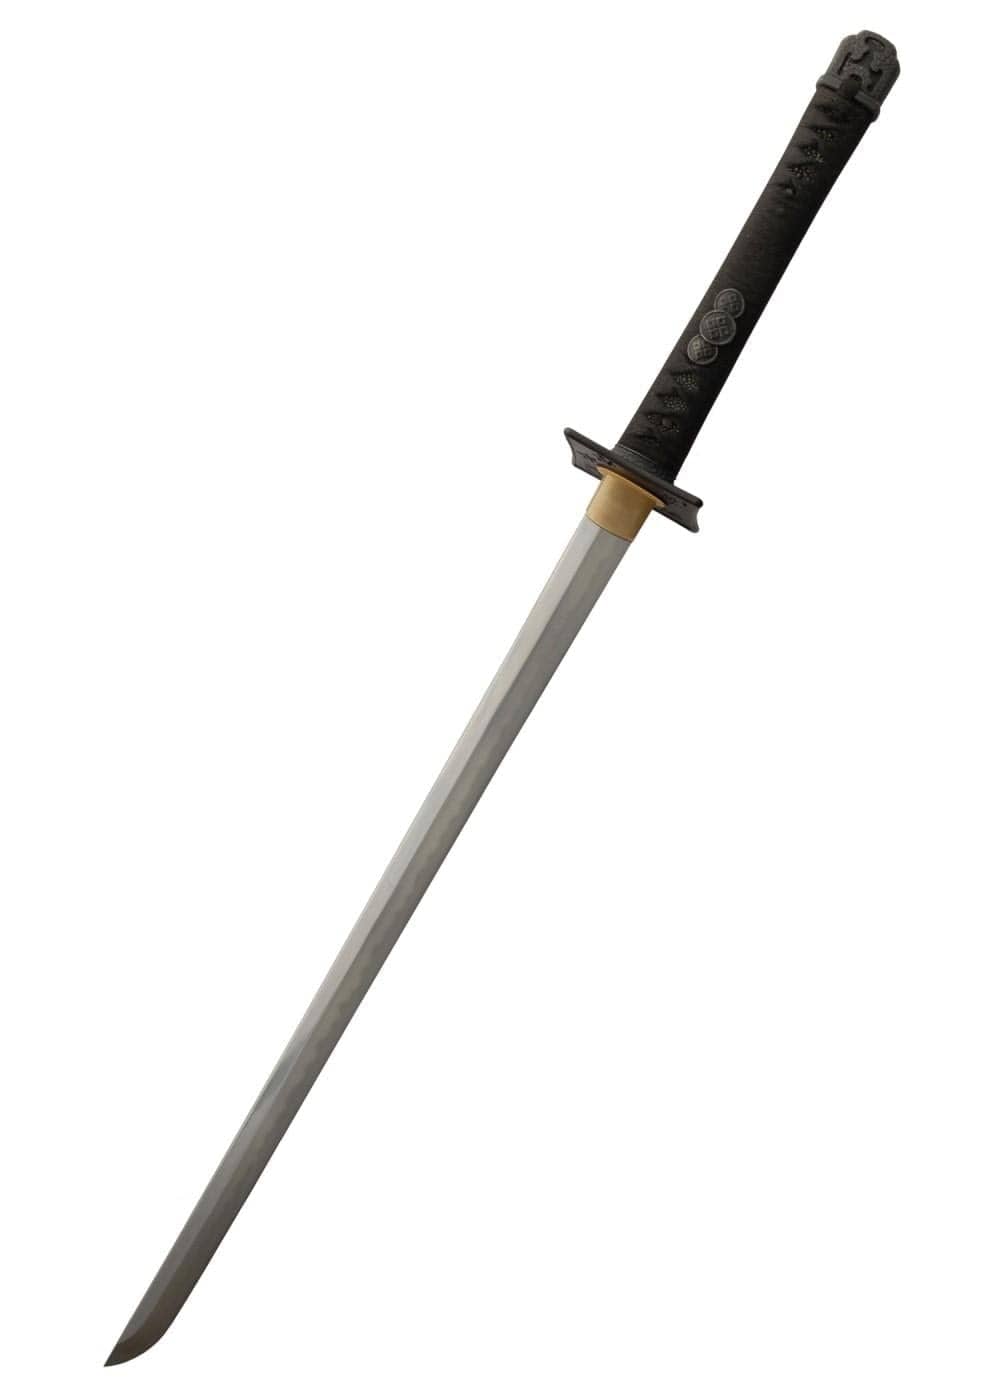 El helado más largo del mundo mide 45 centímetros y es una espada ninja